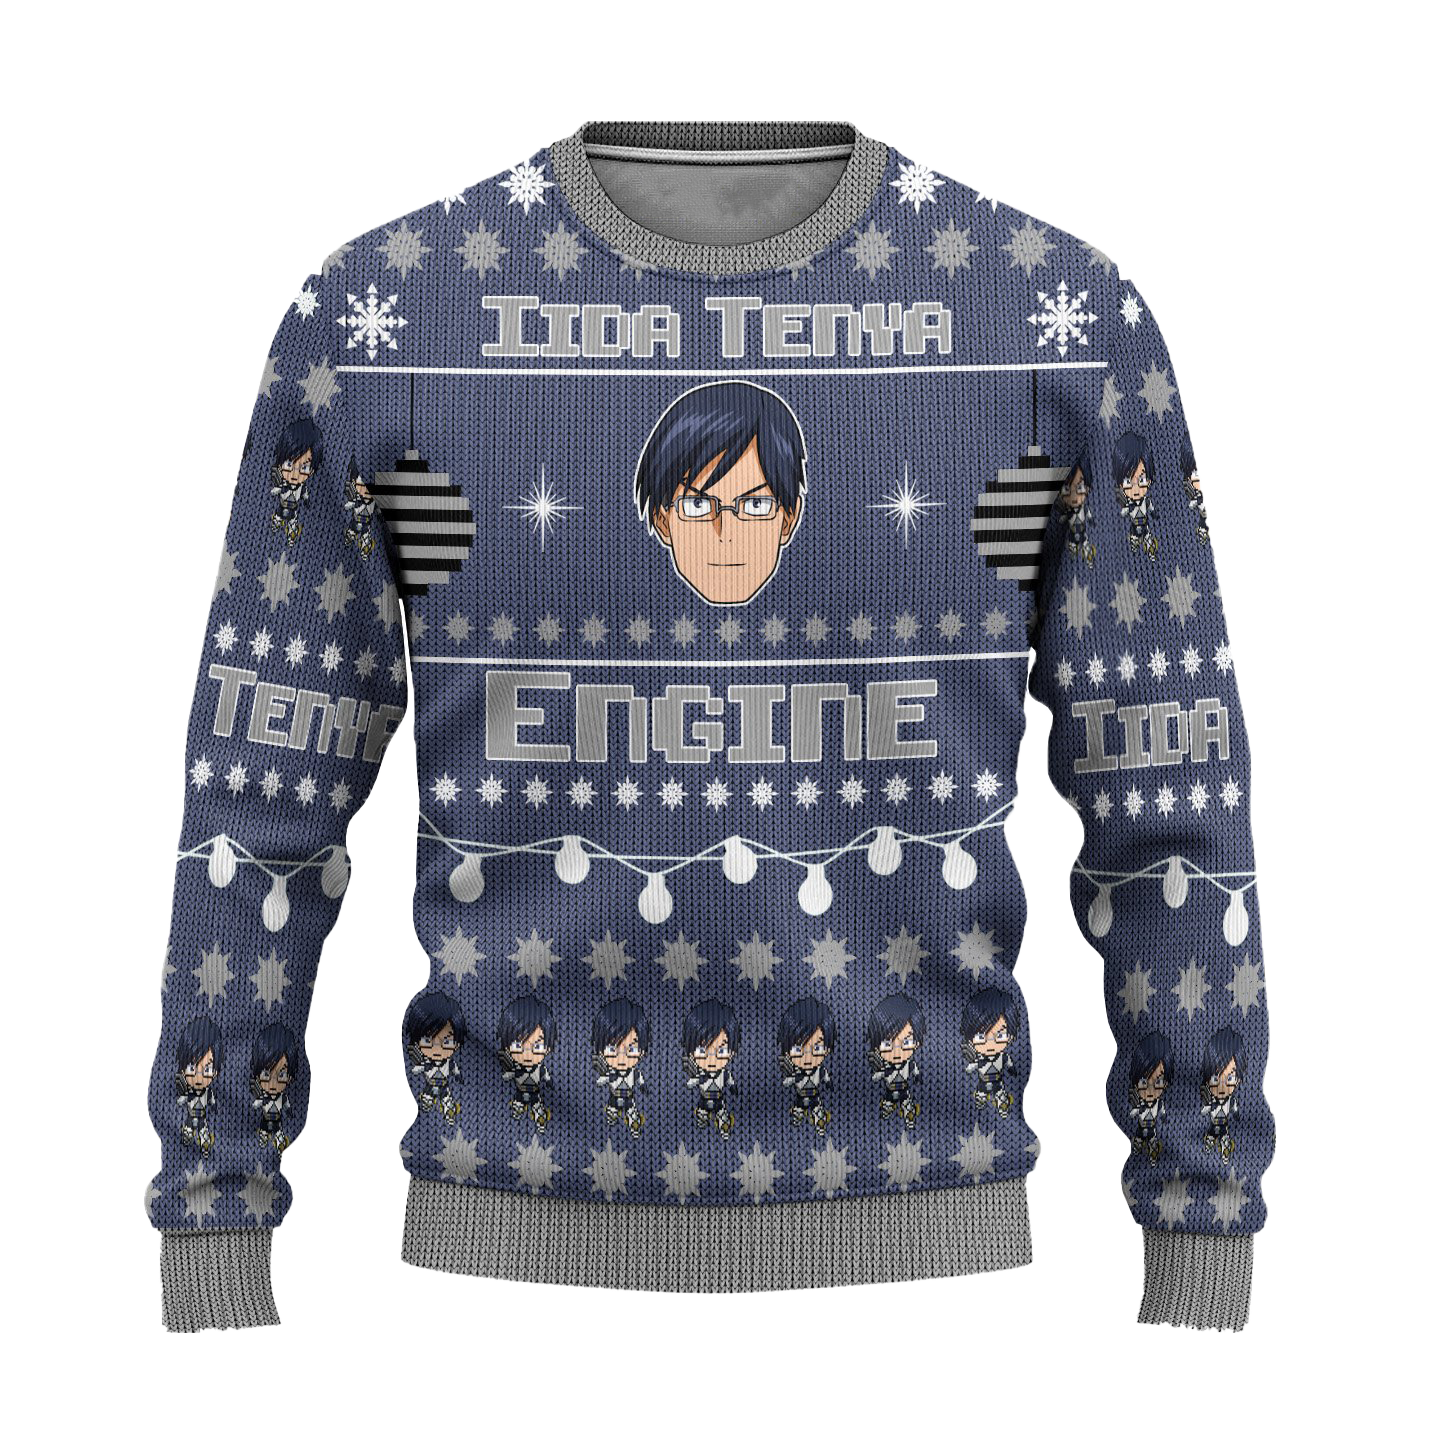 Tenya Iida Anime Ugly Christmas Sweater Custom My Hero Academia Xmas Gift